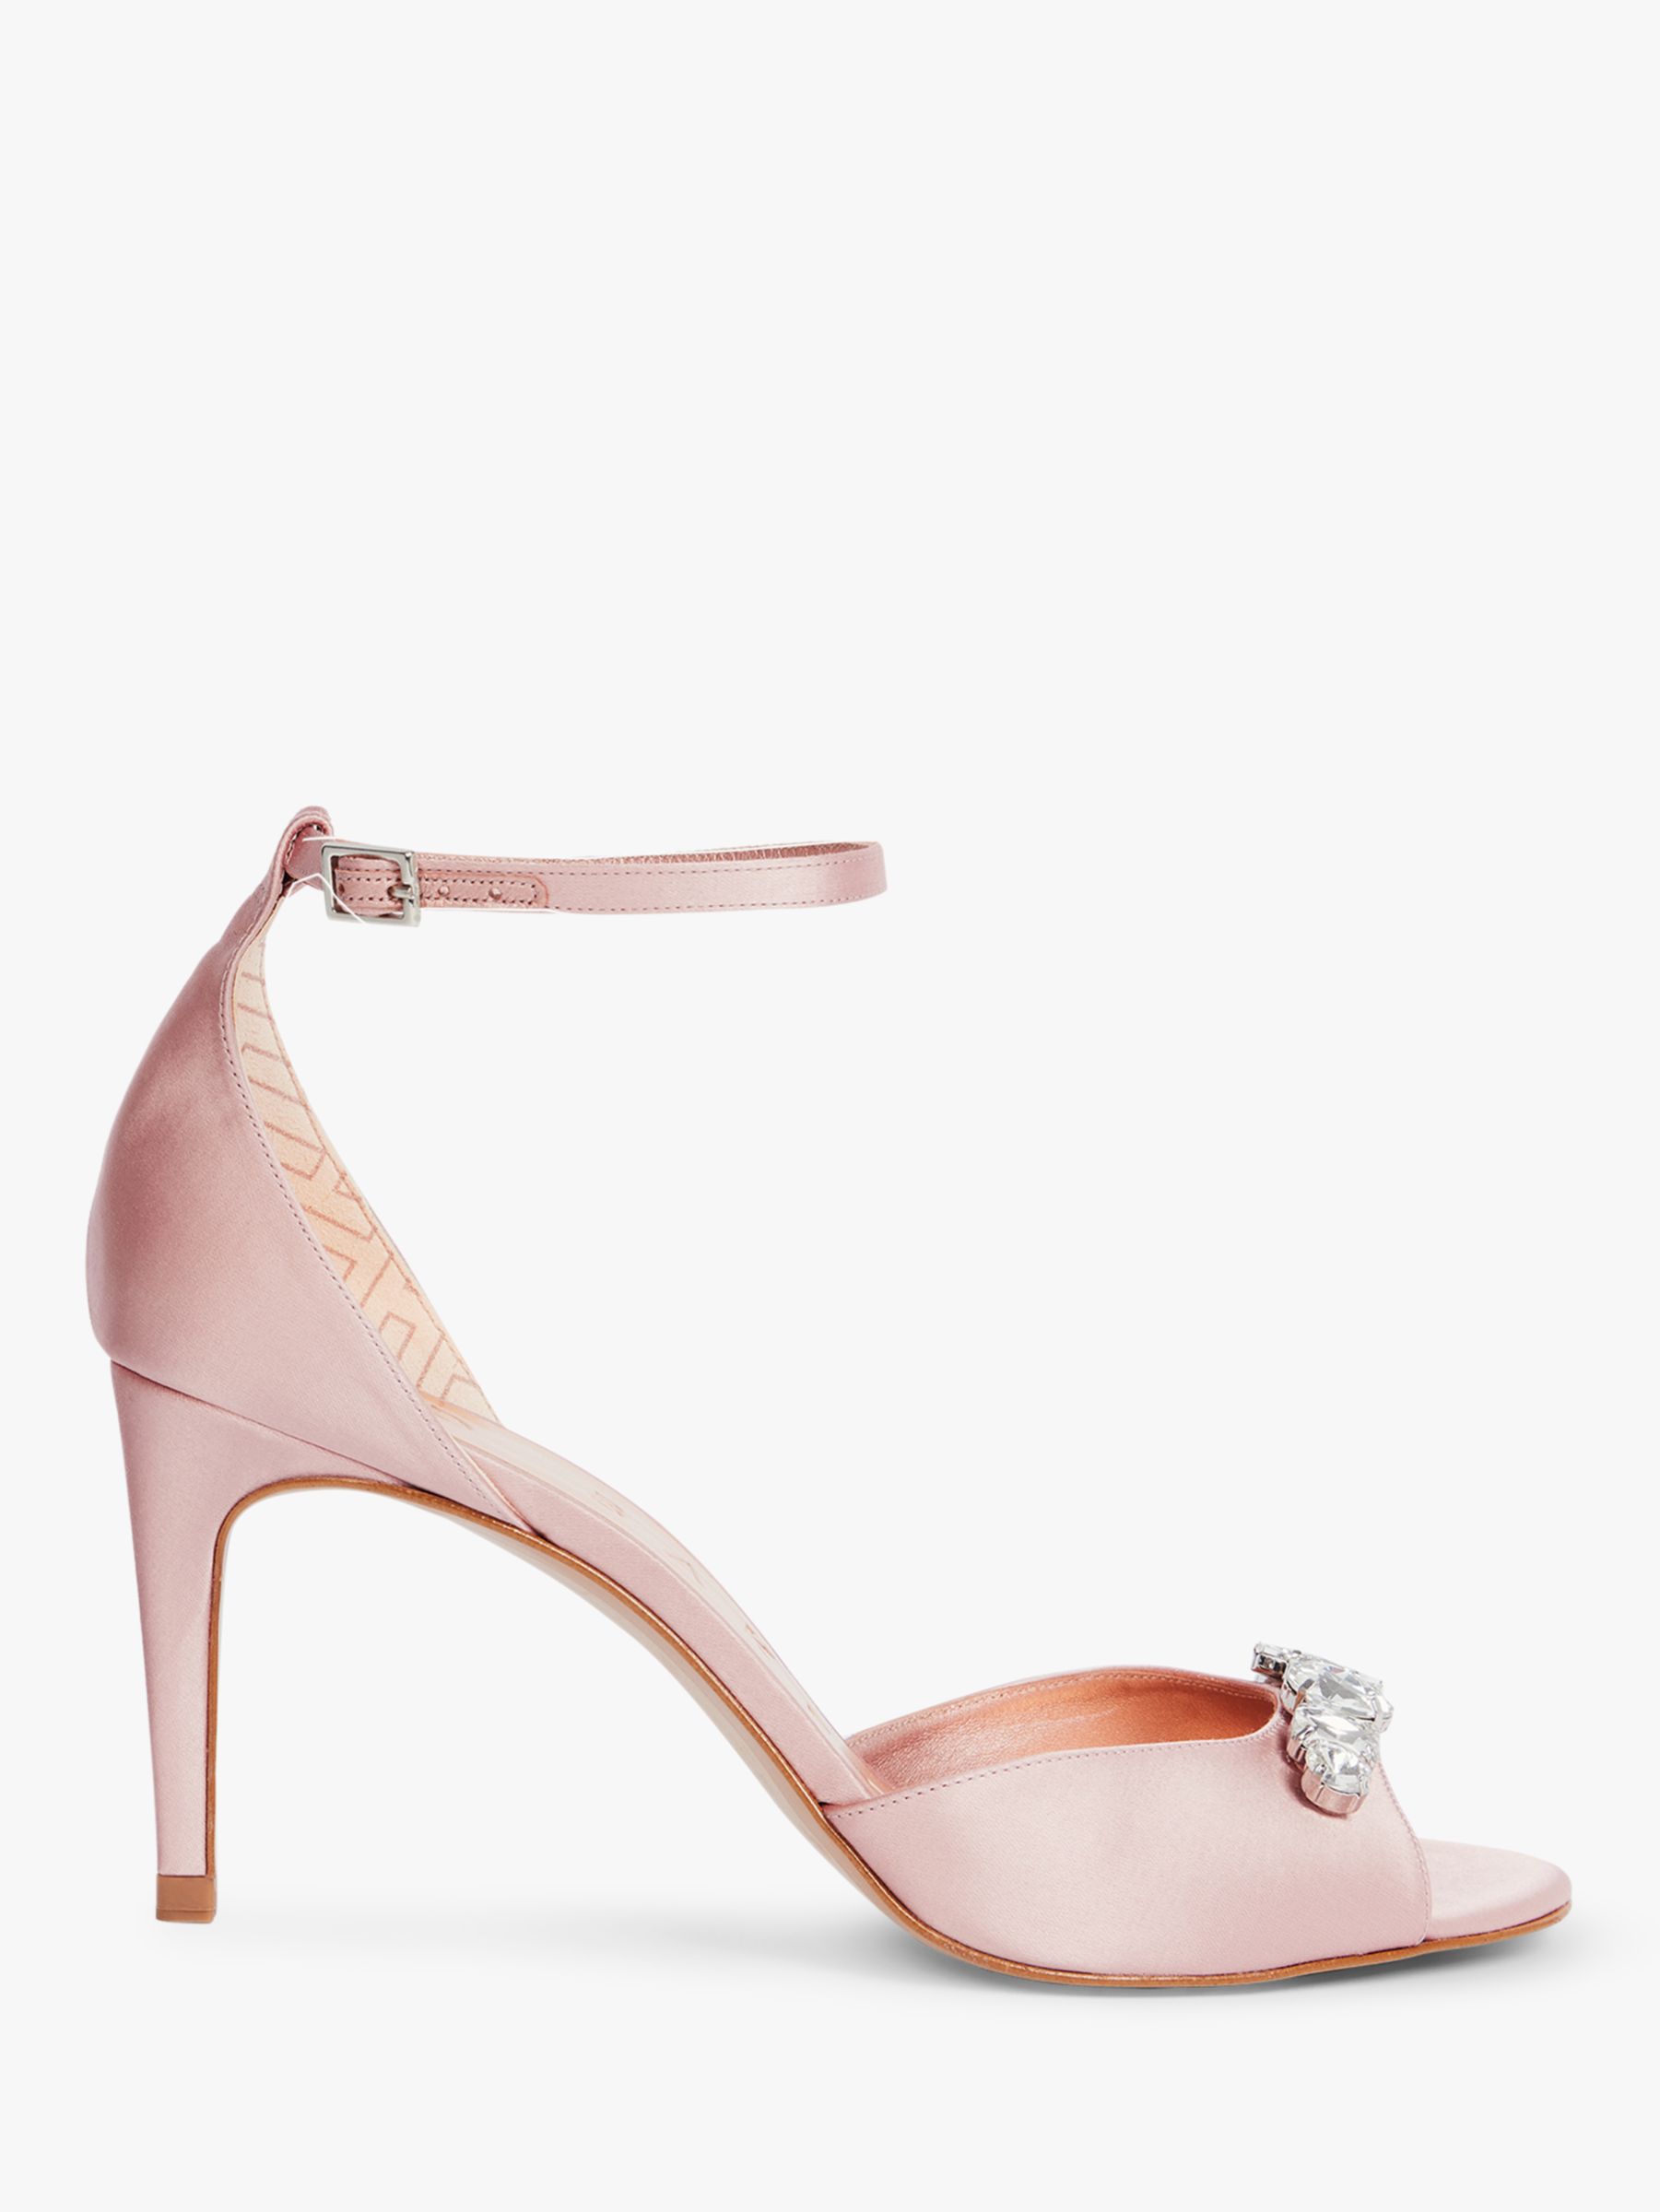 Ted Baker Gleamy Embellished Crystal Sandals, Light Pink